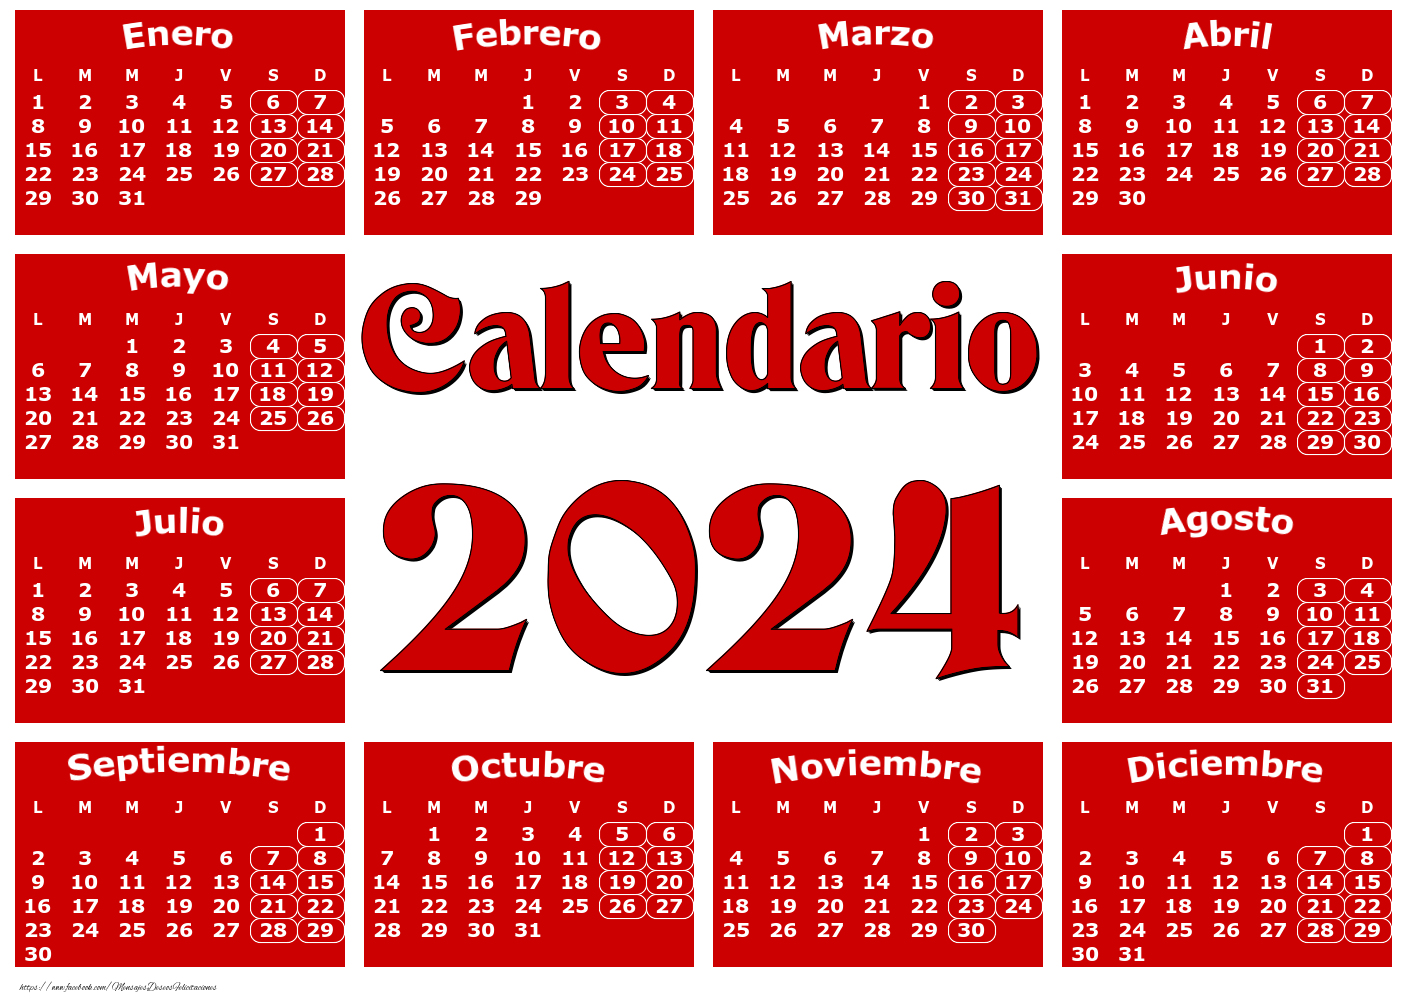 Felicitaciones calendarios - Calendario 2024 - Rojo clásico - Modelo 0020 - mensajesdeseosfelicitaciones.com